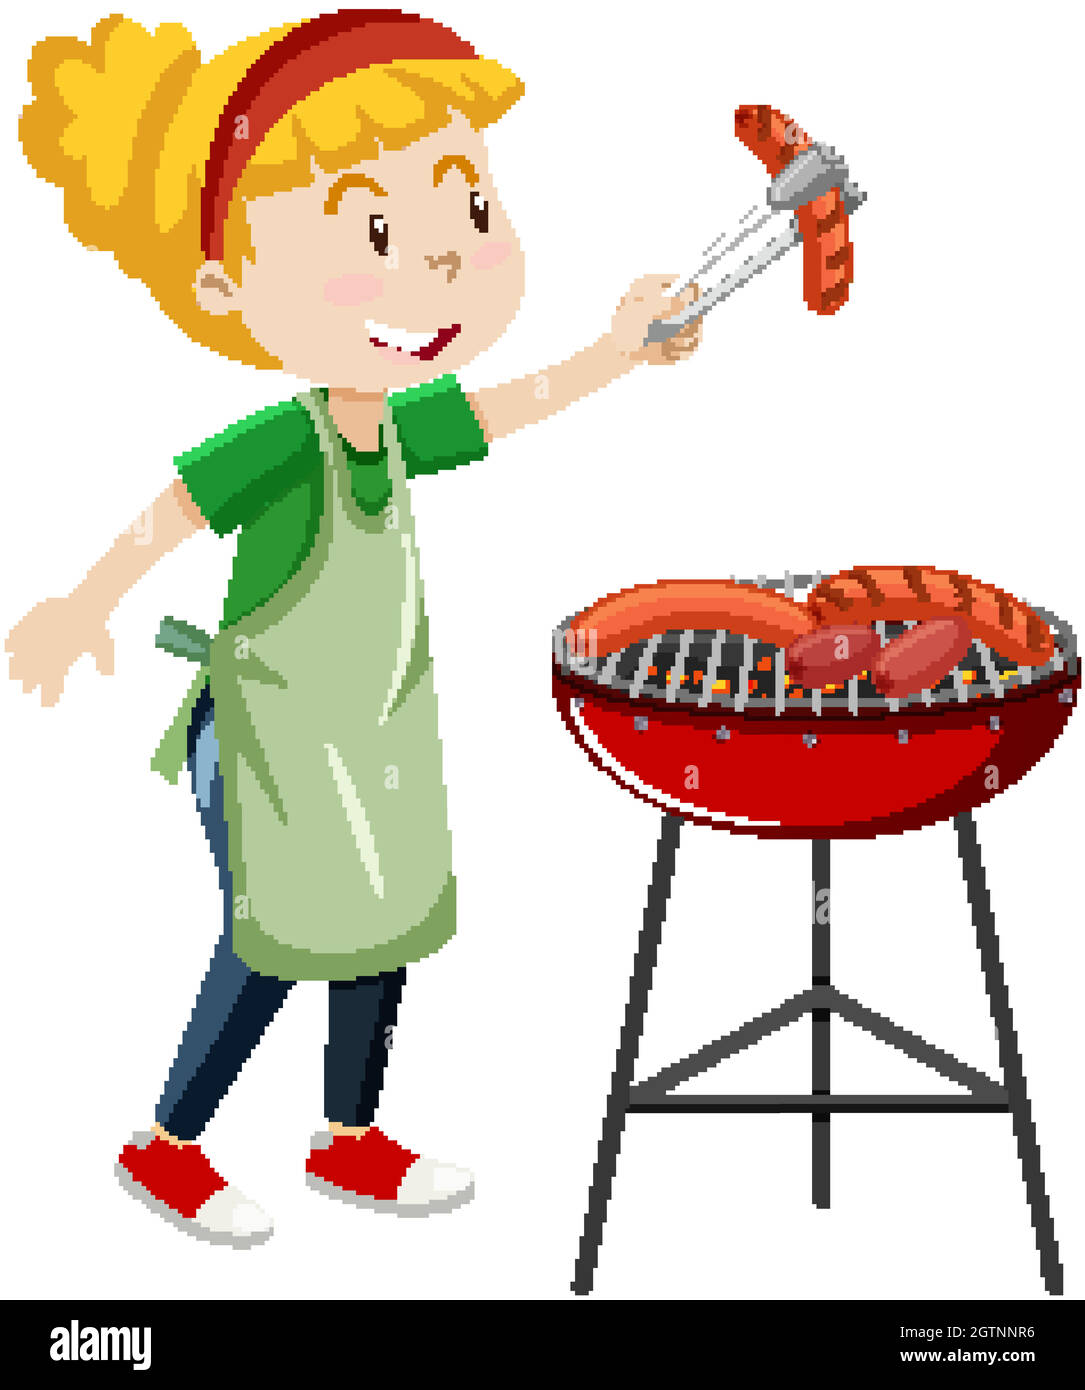 Mädchen Kochen Grill Steak Cartoon-Stil auf weißem Hintergrund isoliert  Abbildung Stock-Vektorgrafik - Alamy